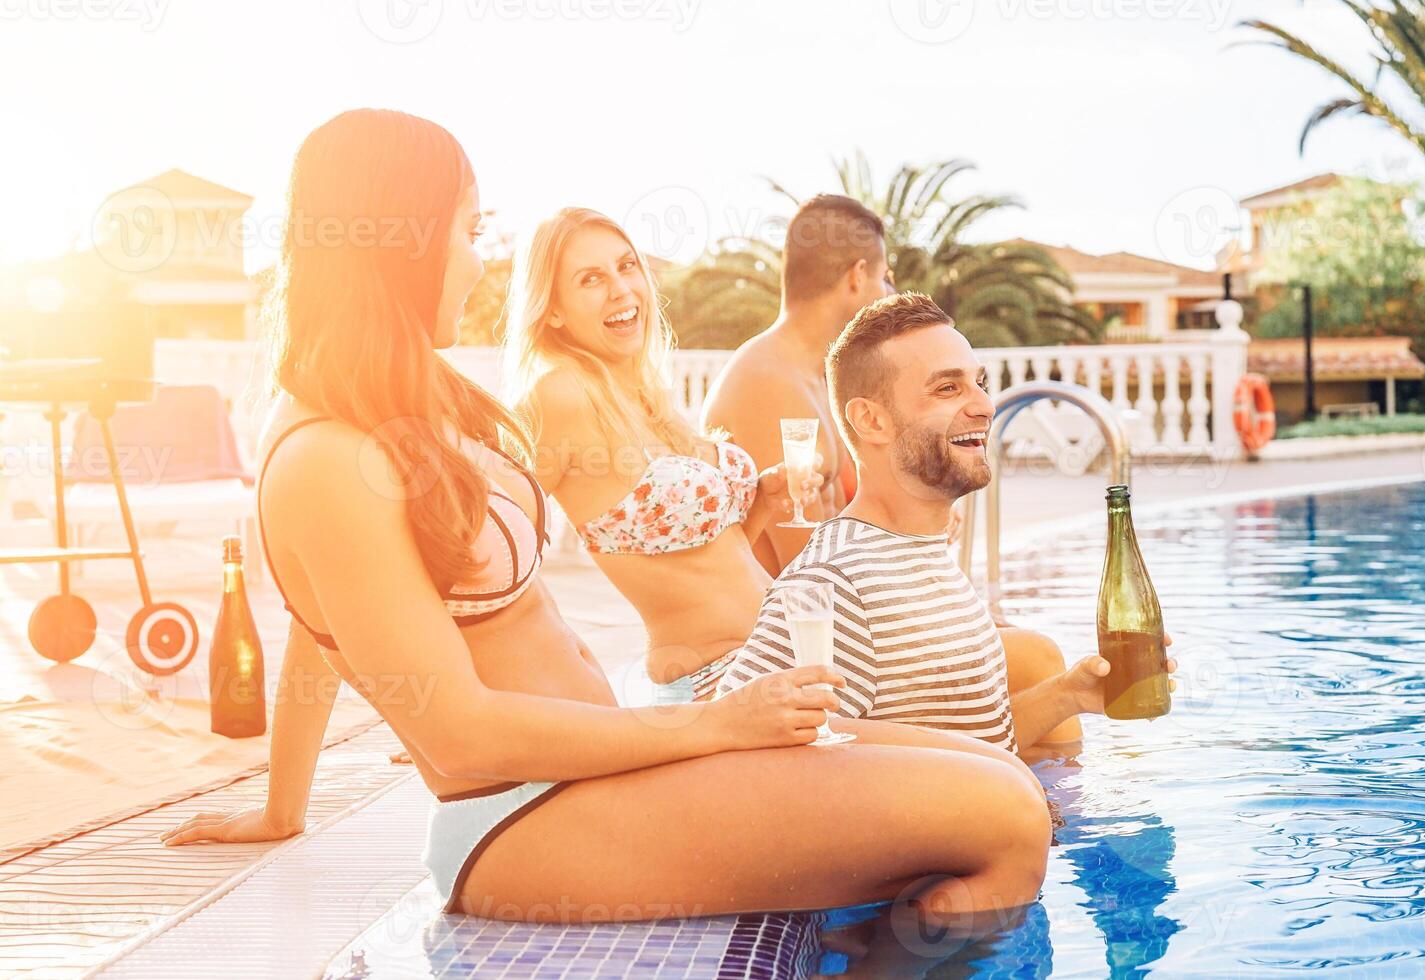 Gruppe von glücklich freunde Herstellung ein Schwimmbad Party beim Sonnenuntergang - - jung Menschen Lachen und haben Spaß Trinken Champagner im Ferien - - Freundschaft, Feiertage, Jugend Lebensstil Konzept foto